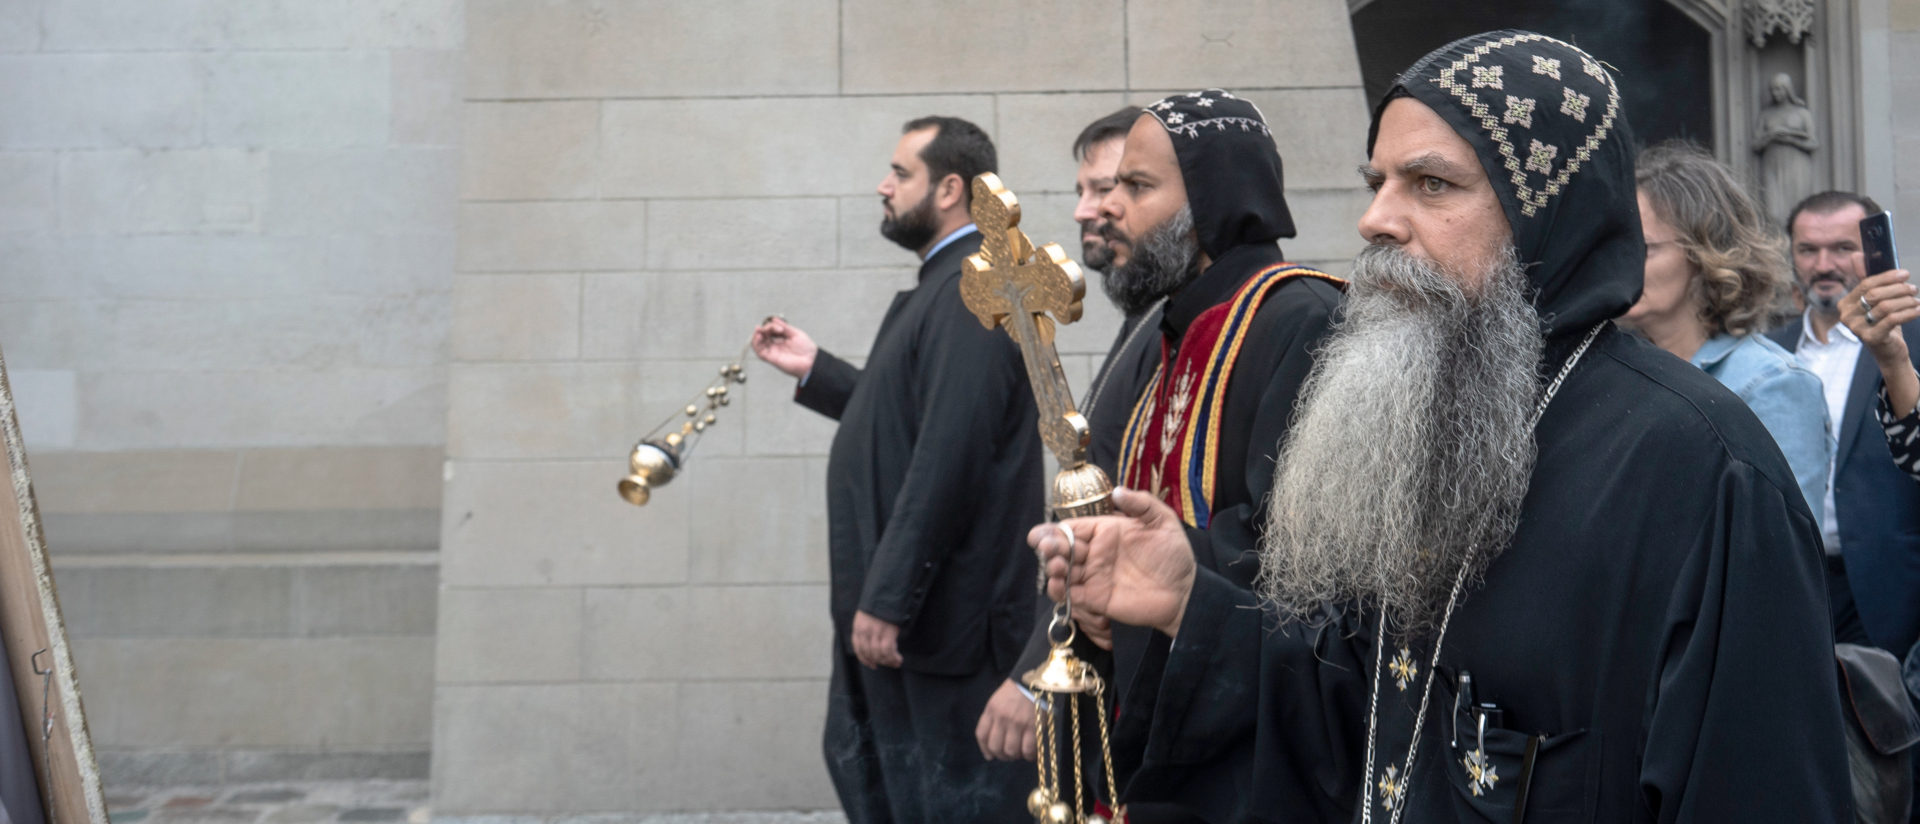 Orthodoxe Prozession in der Zürcher Altstadt